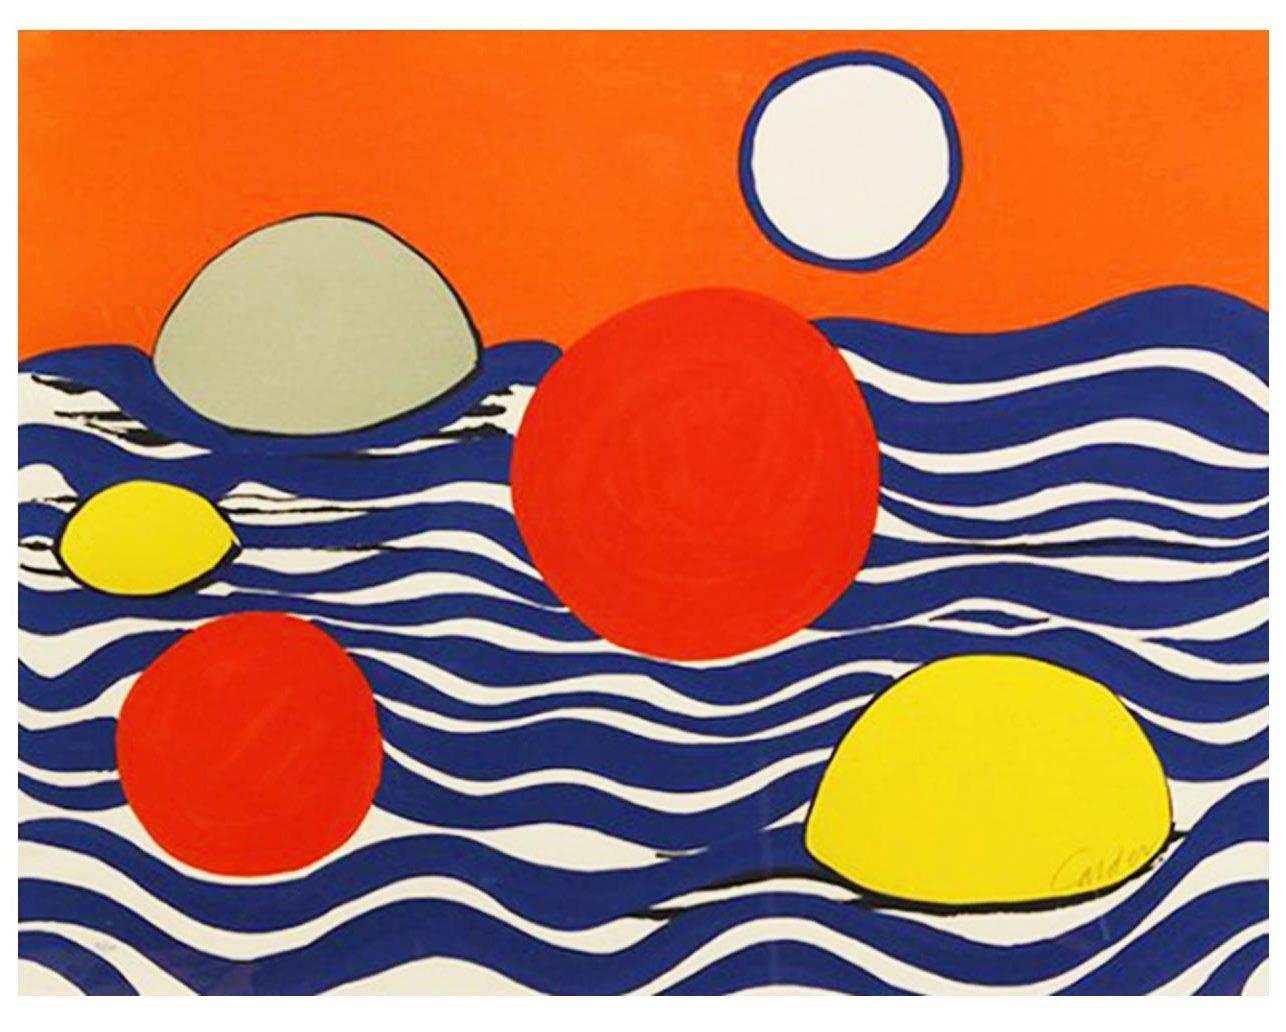 Circles and waves  - Print by Alexander Calder